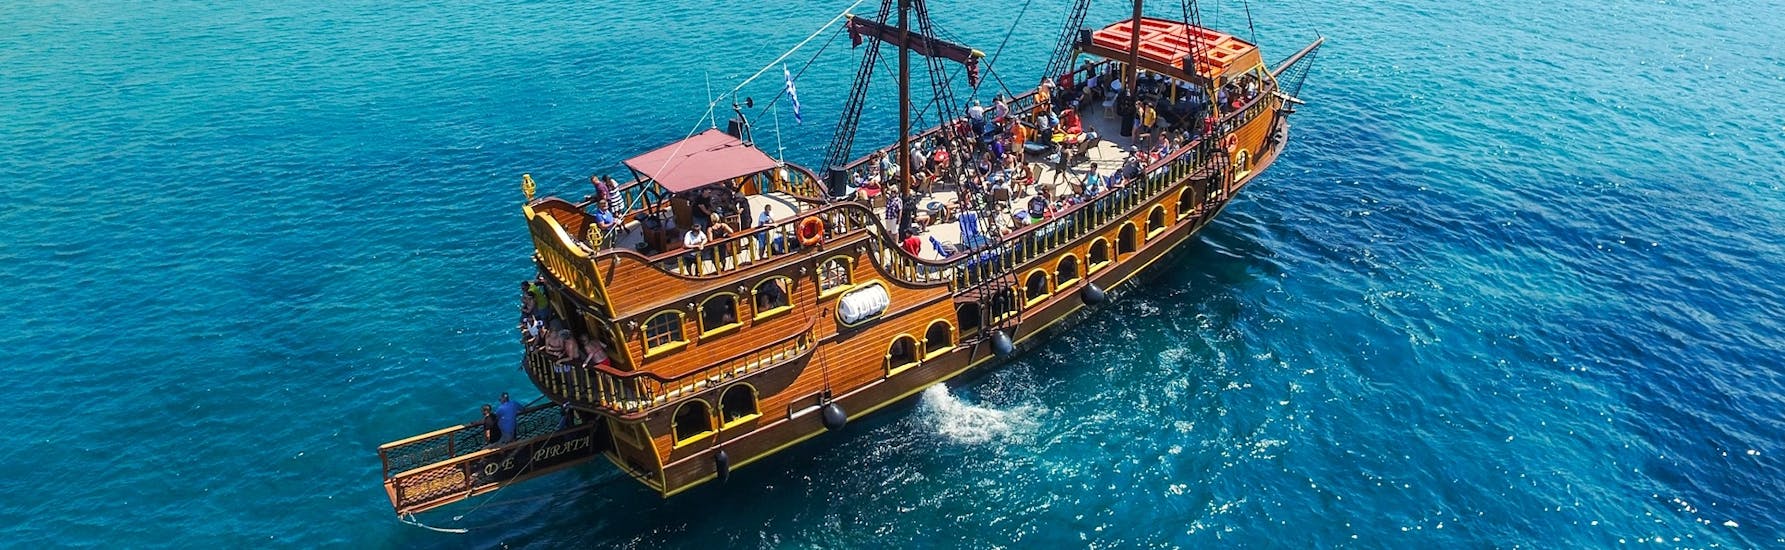 Un grupo de participantes disfrutando de un emocionante viaje en barco pirata llevándolos a Kalymnos, Pserimos y Plati con almuerzo con Barco de Pirata.